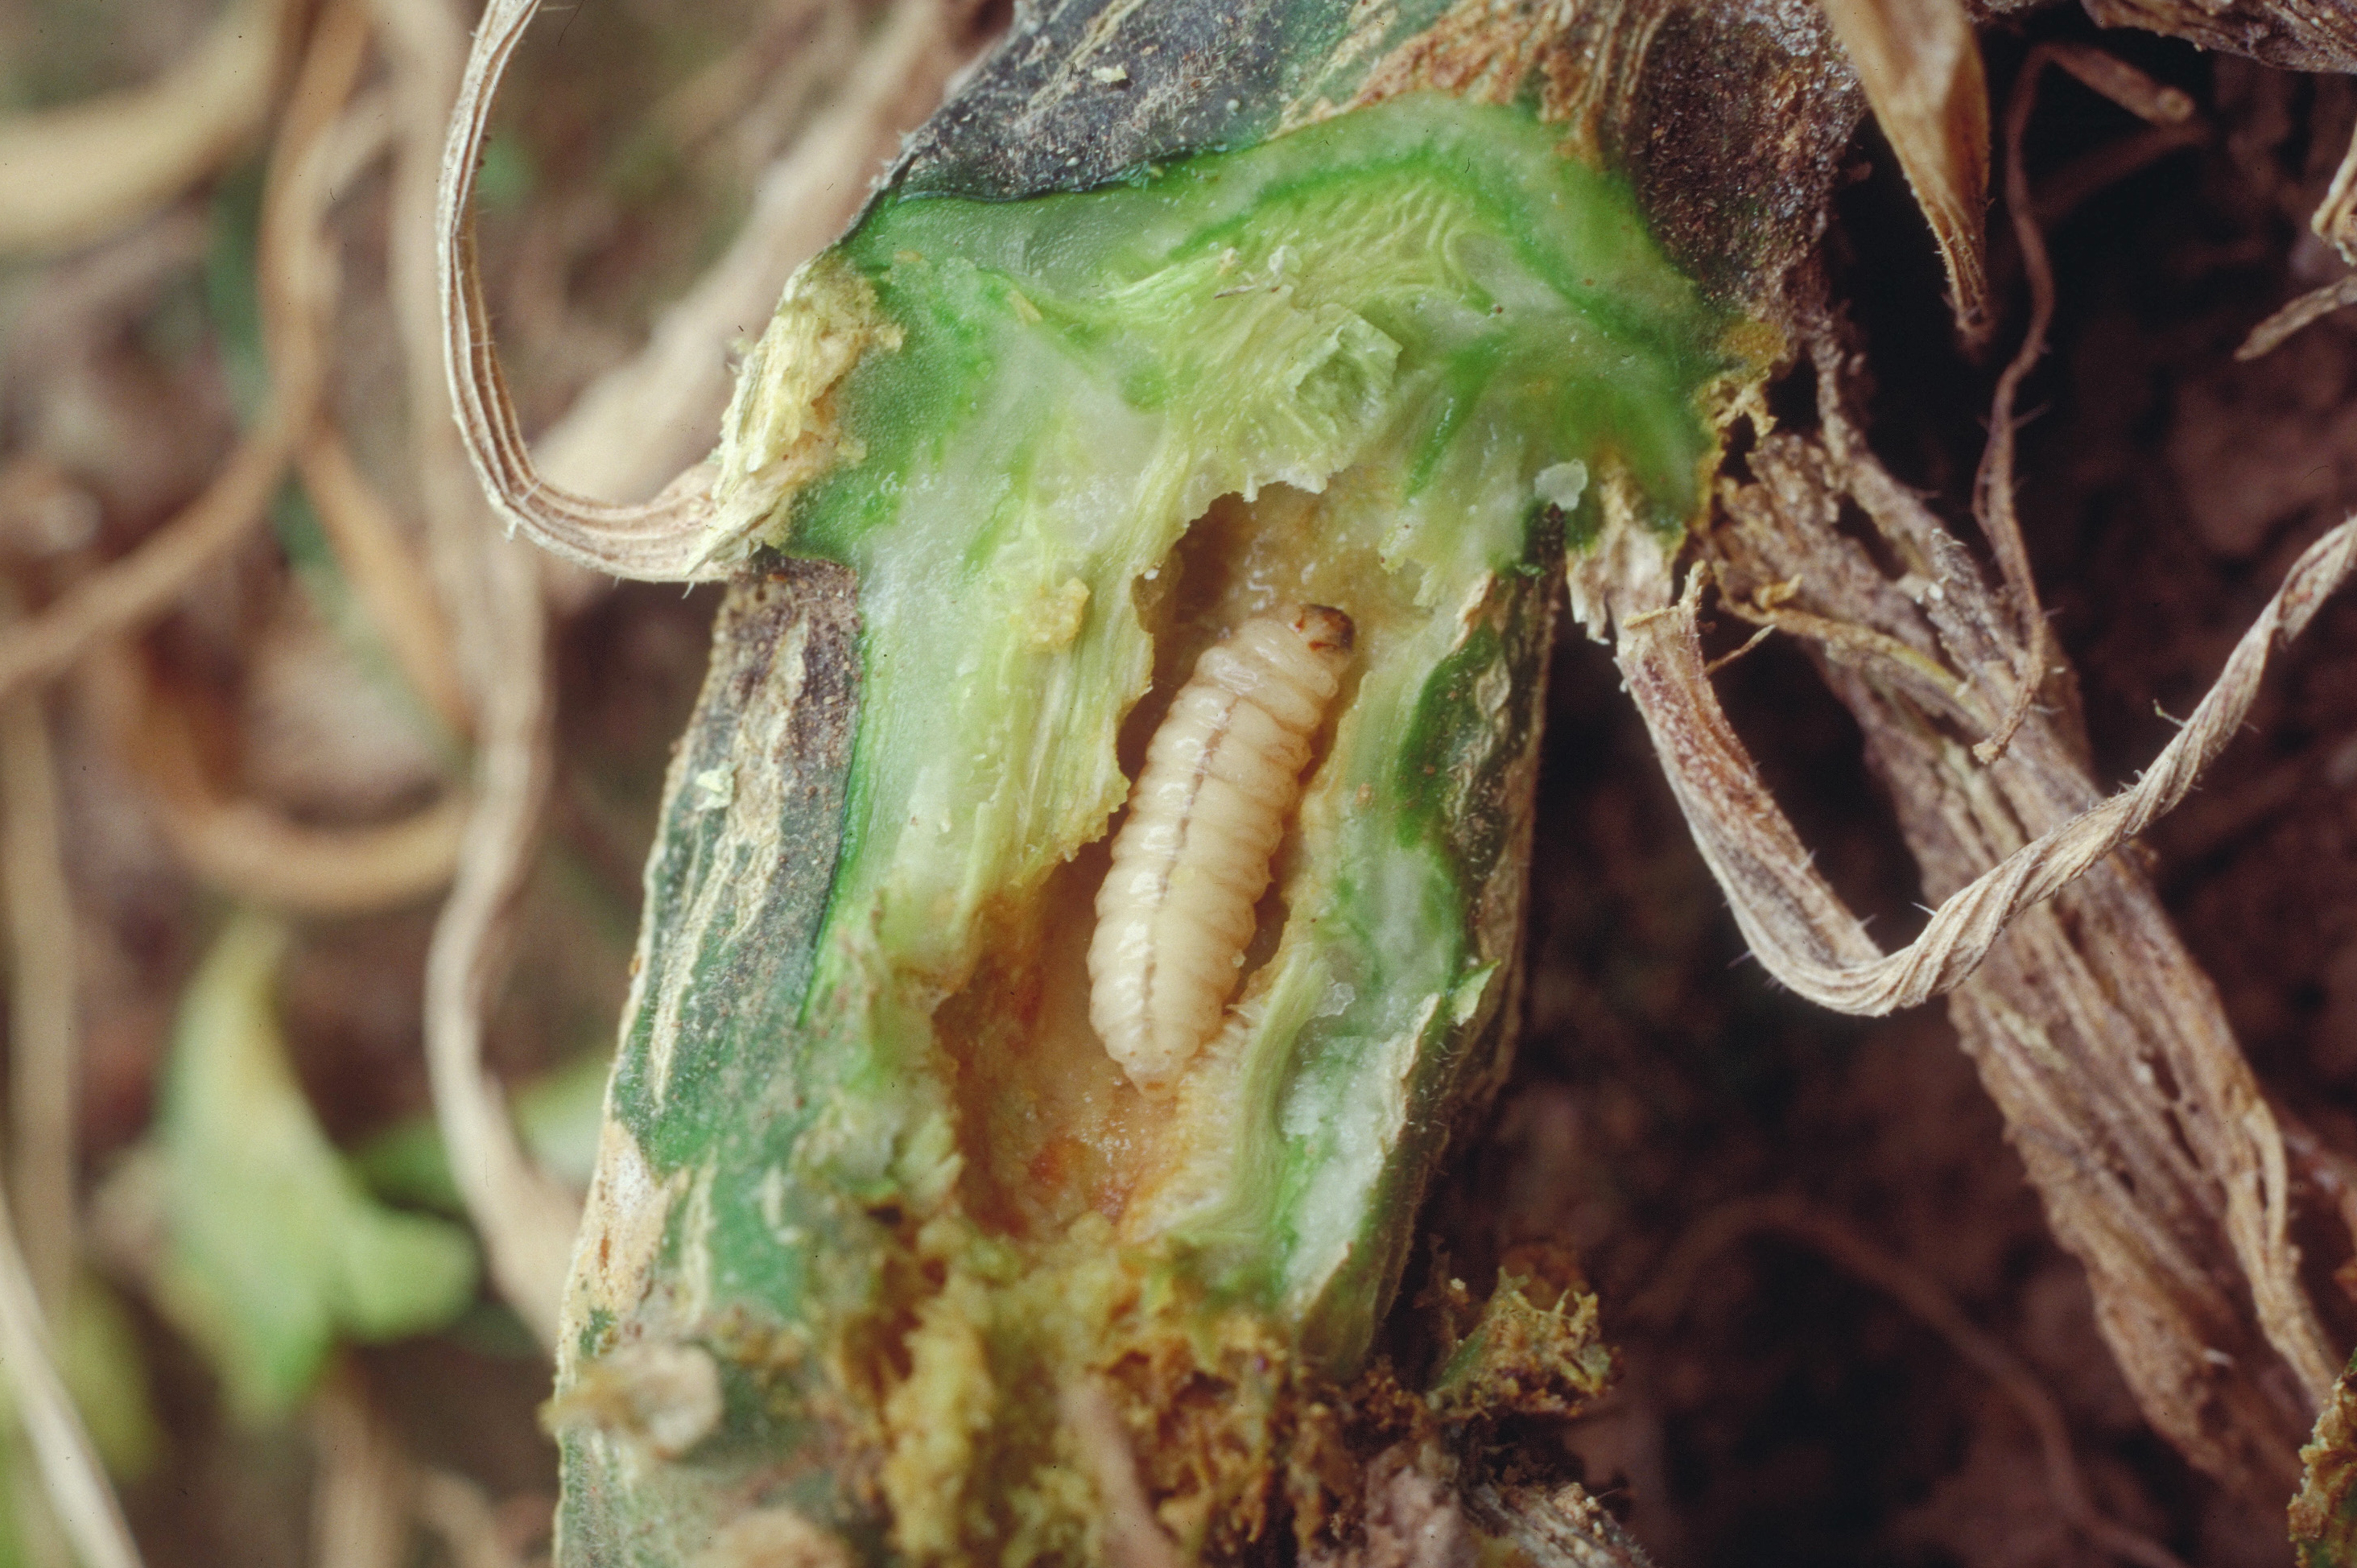 Squash vine borer larva tunneling into cucurbit stem.